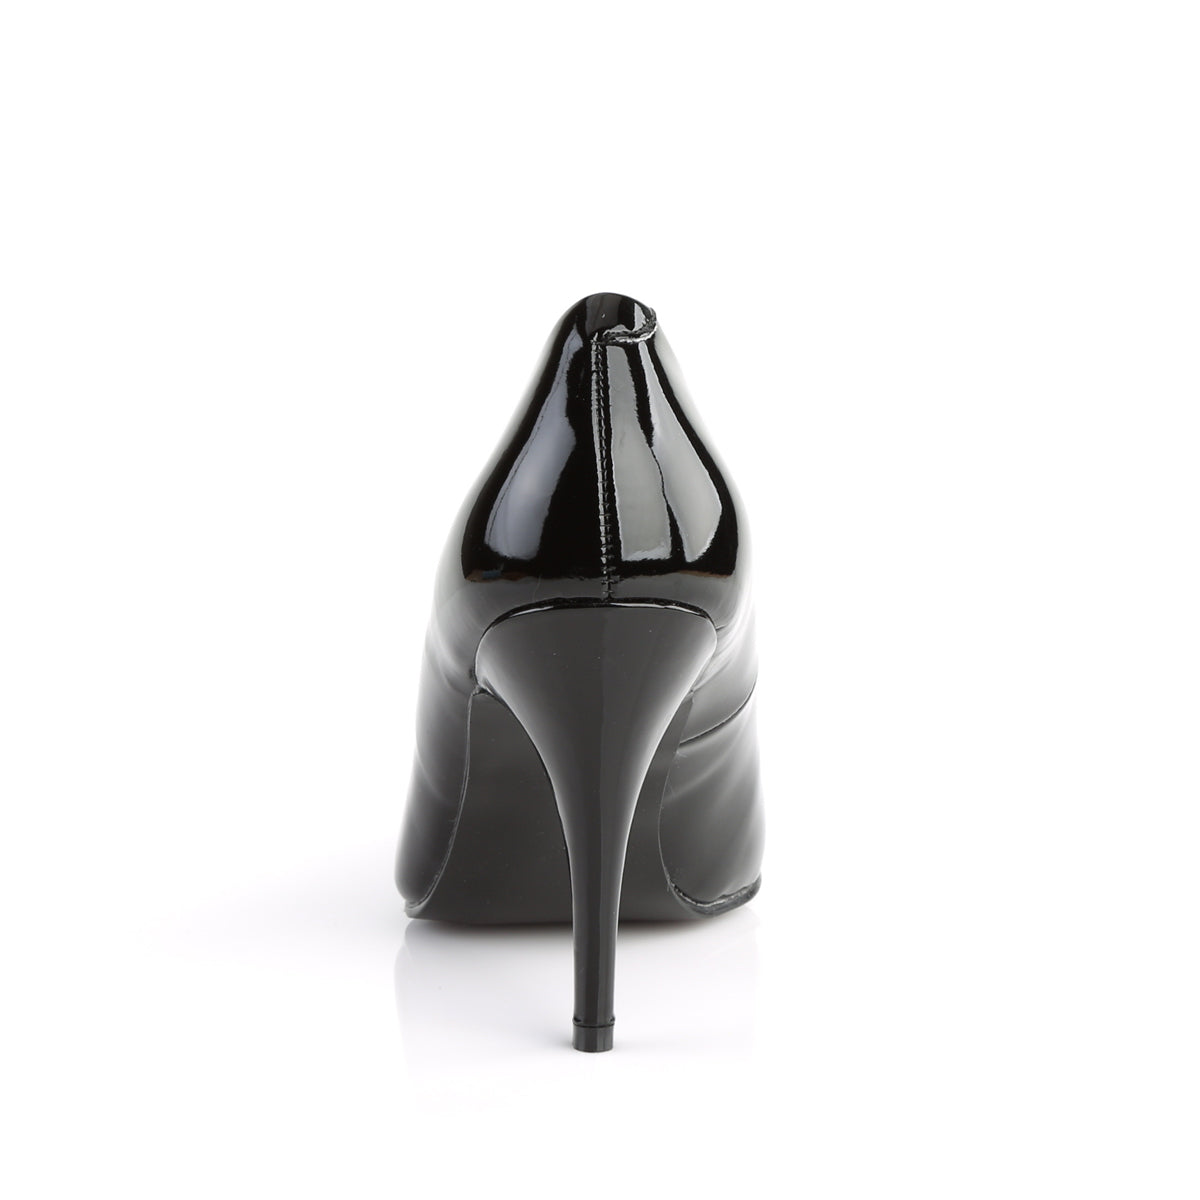 VANITY-420 Pleaser Shoe 4" Heel Black Patent Fetish Footwear-Pleaser- Sexy Shoes Fetish Footwear